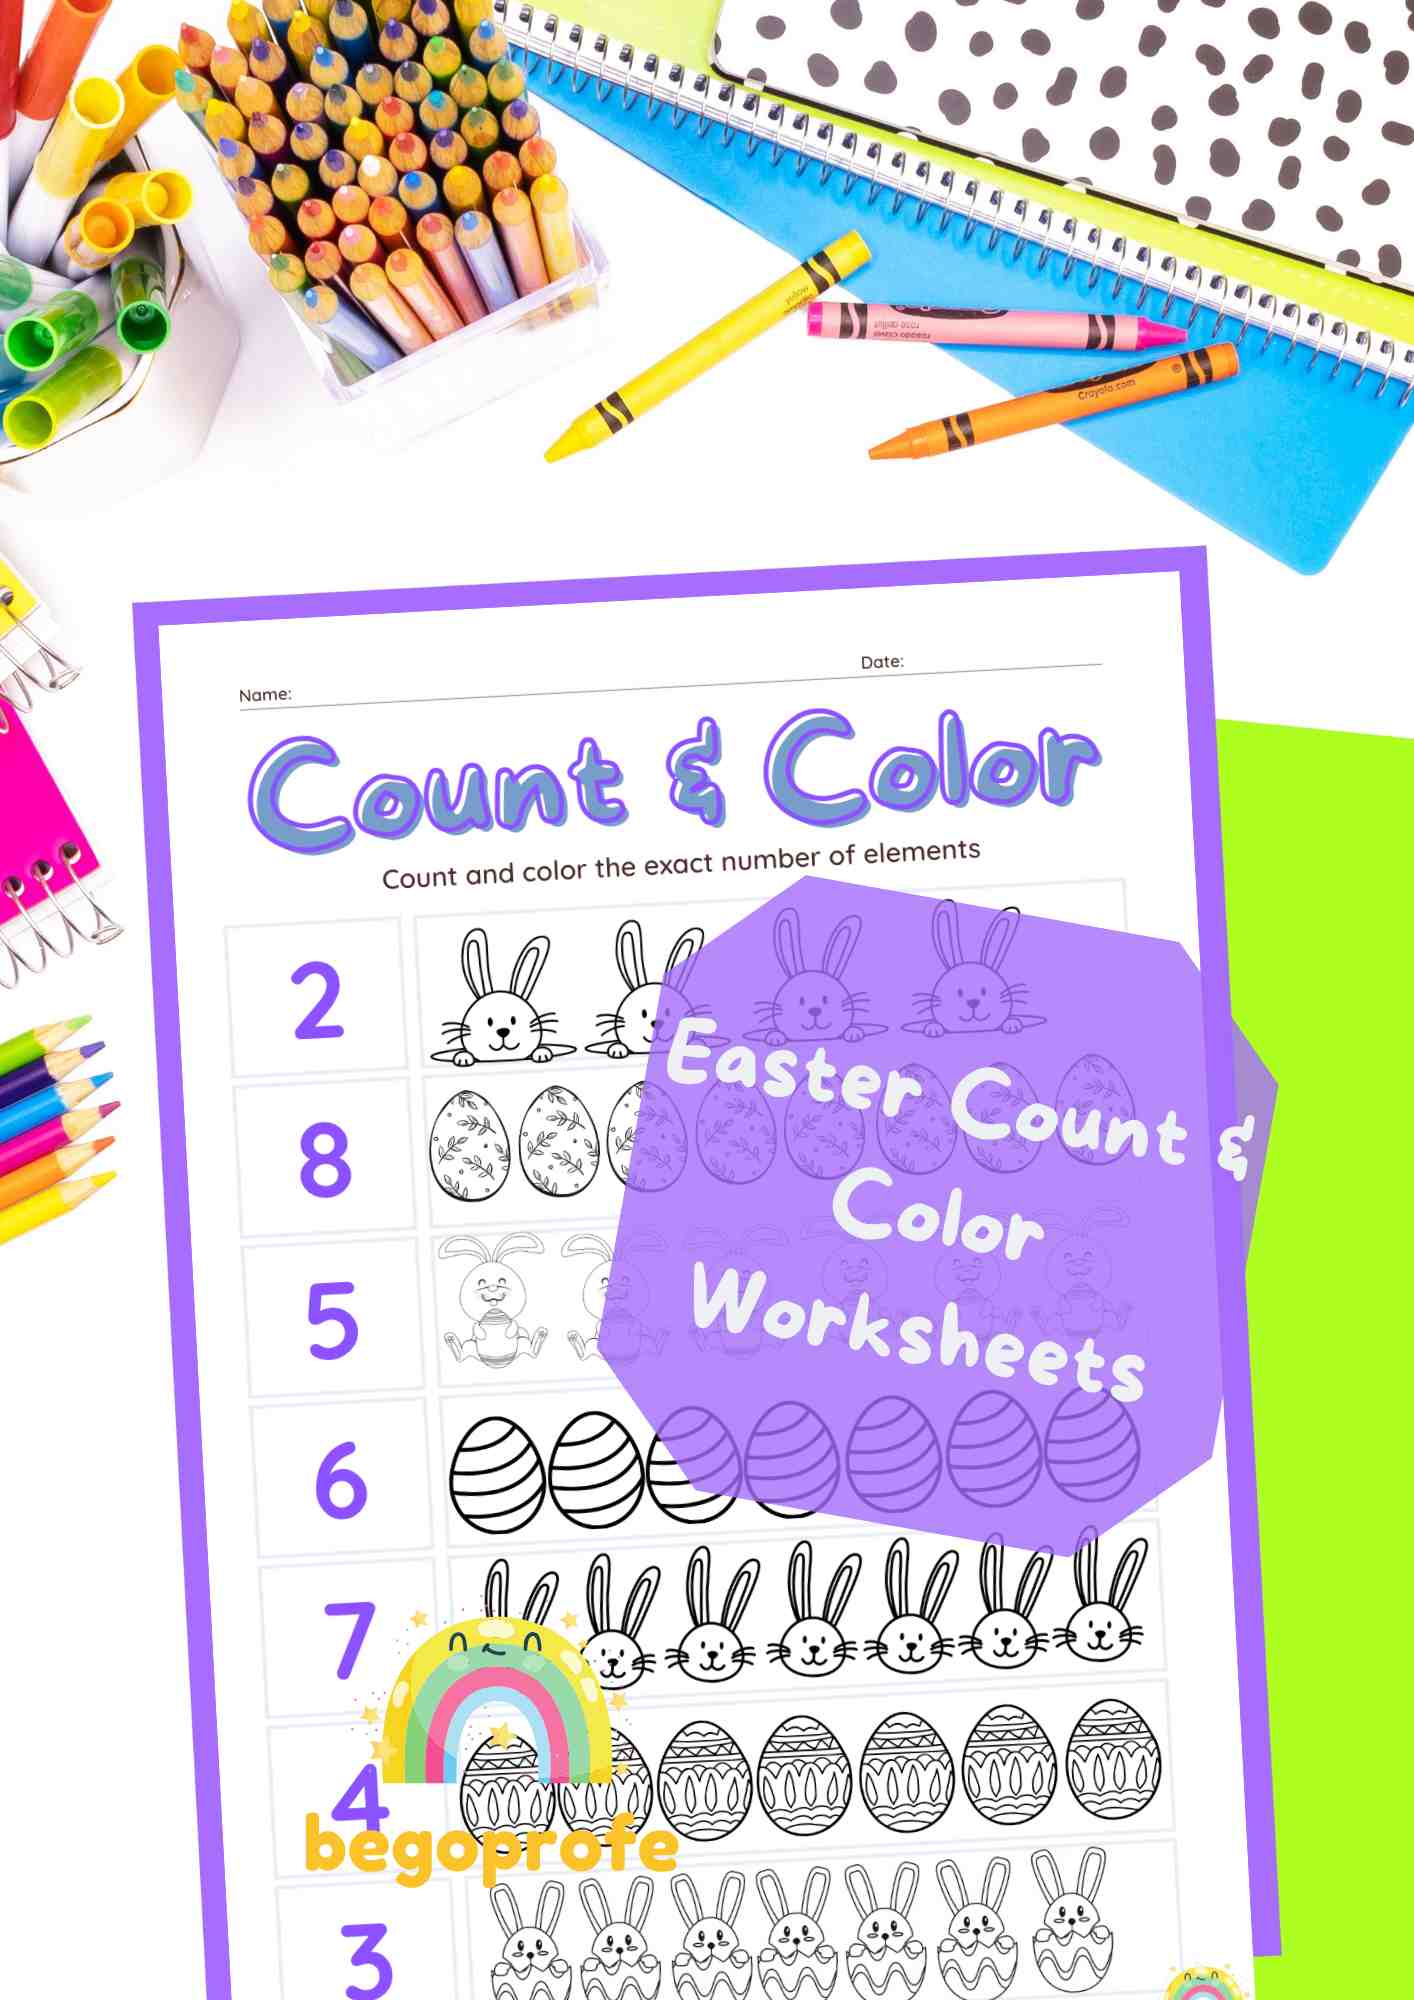 Easter Count & Color Worksheet